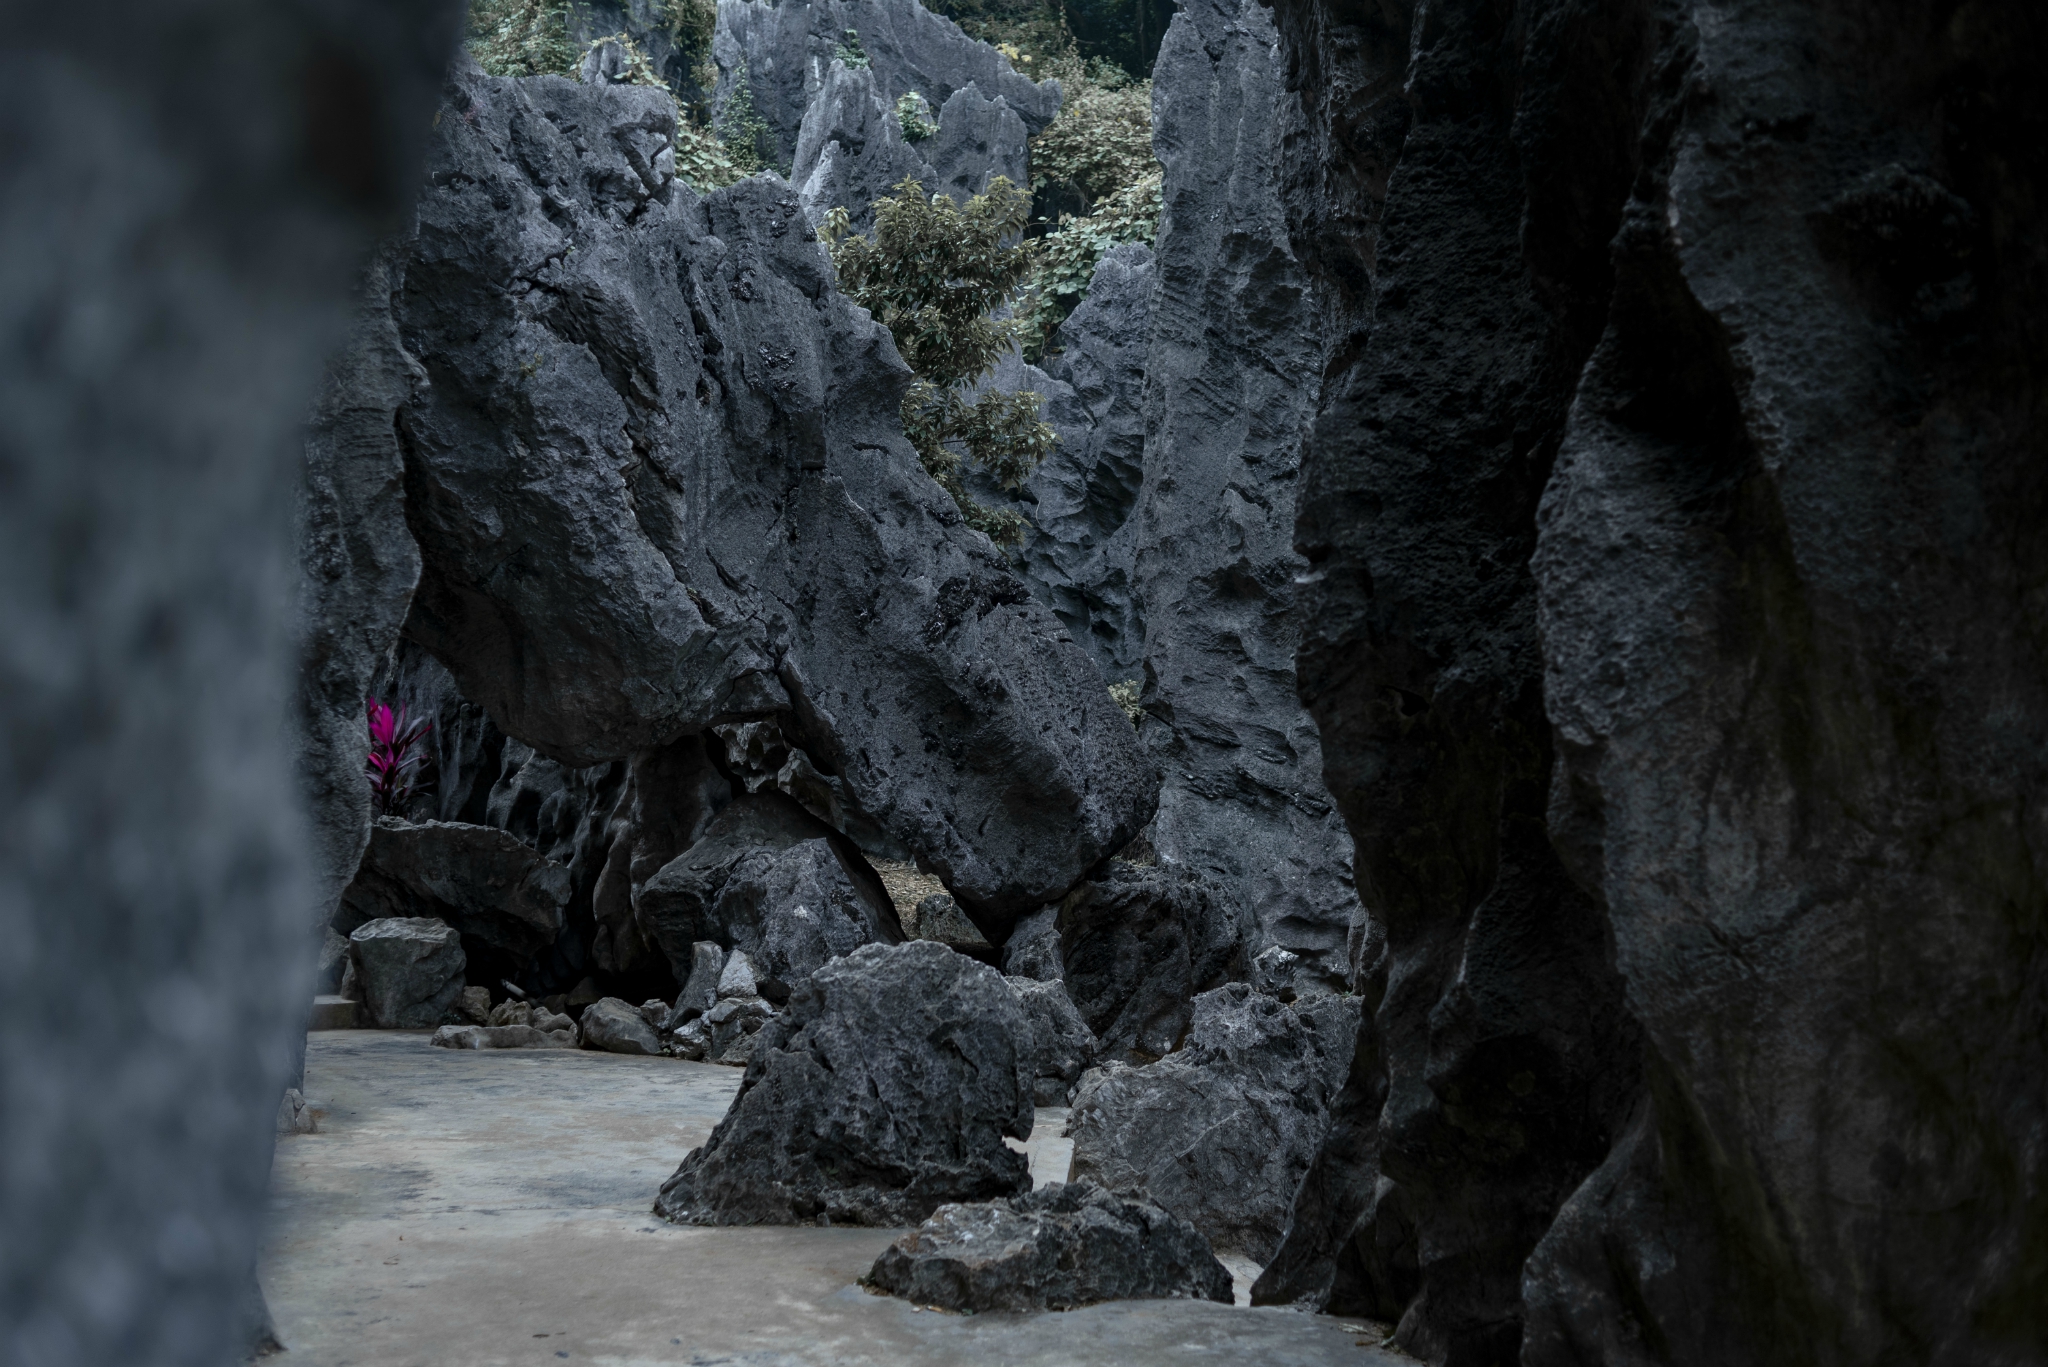 阳江有一个人间仙境的地方叫春湾石林大自然的色彩石灰岩盆地山峰环绕